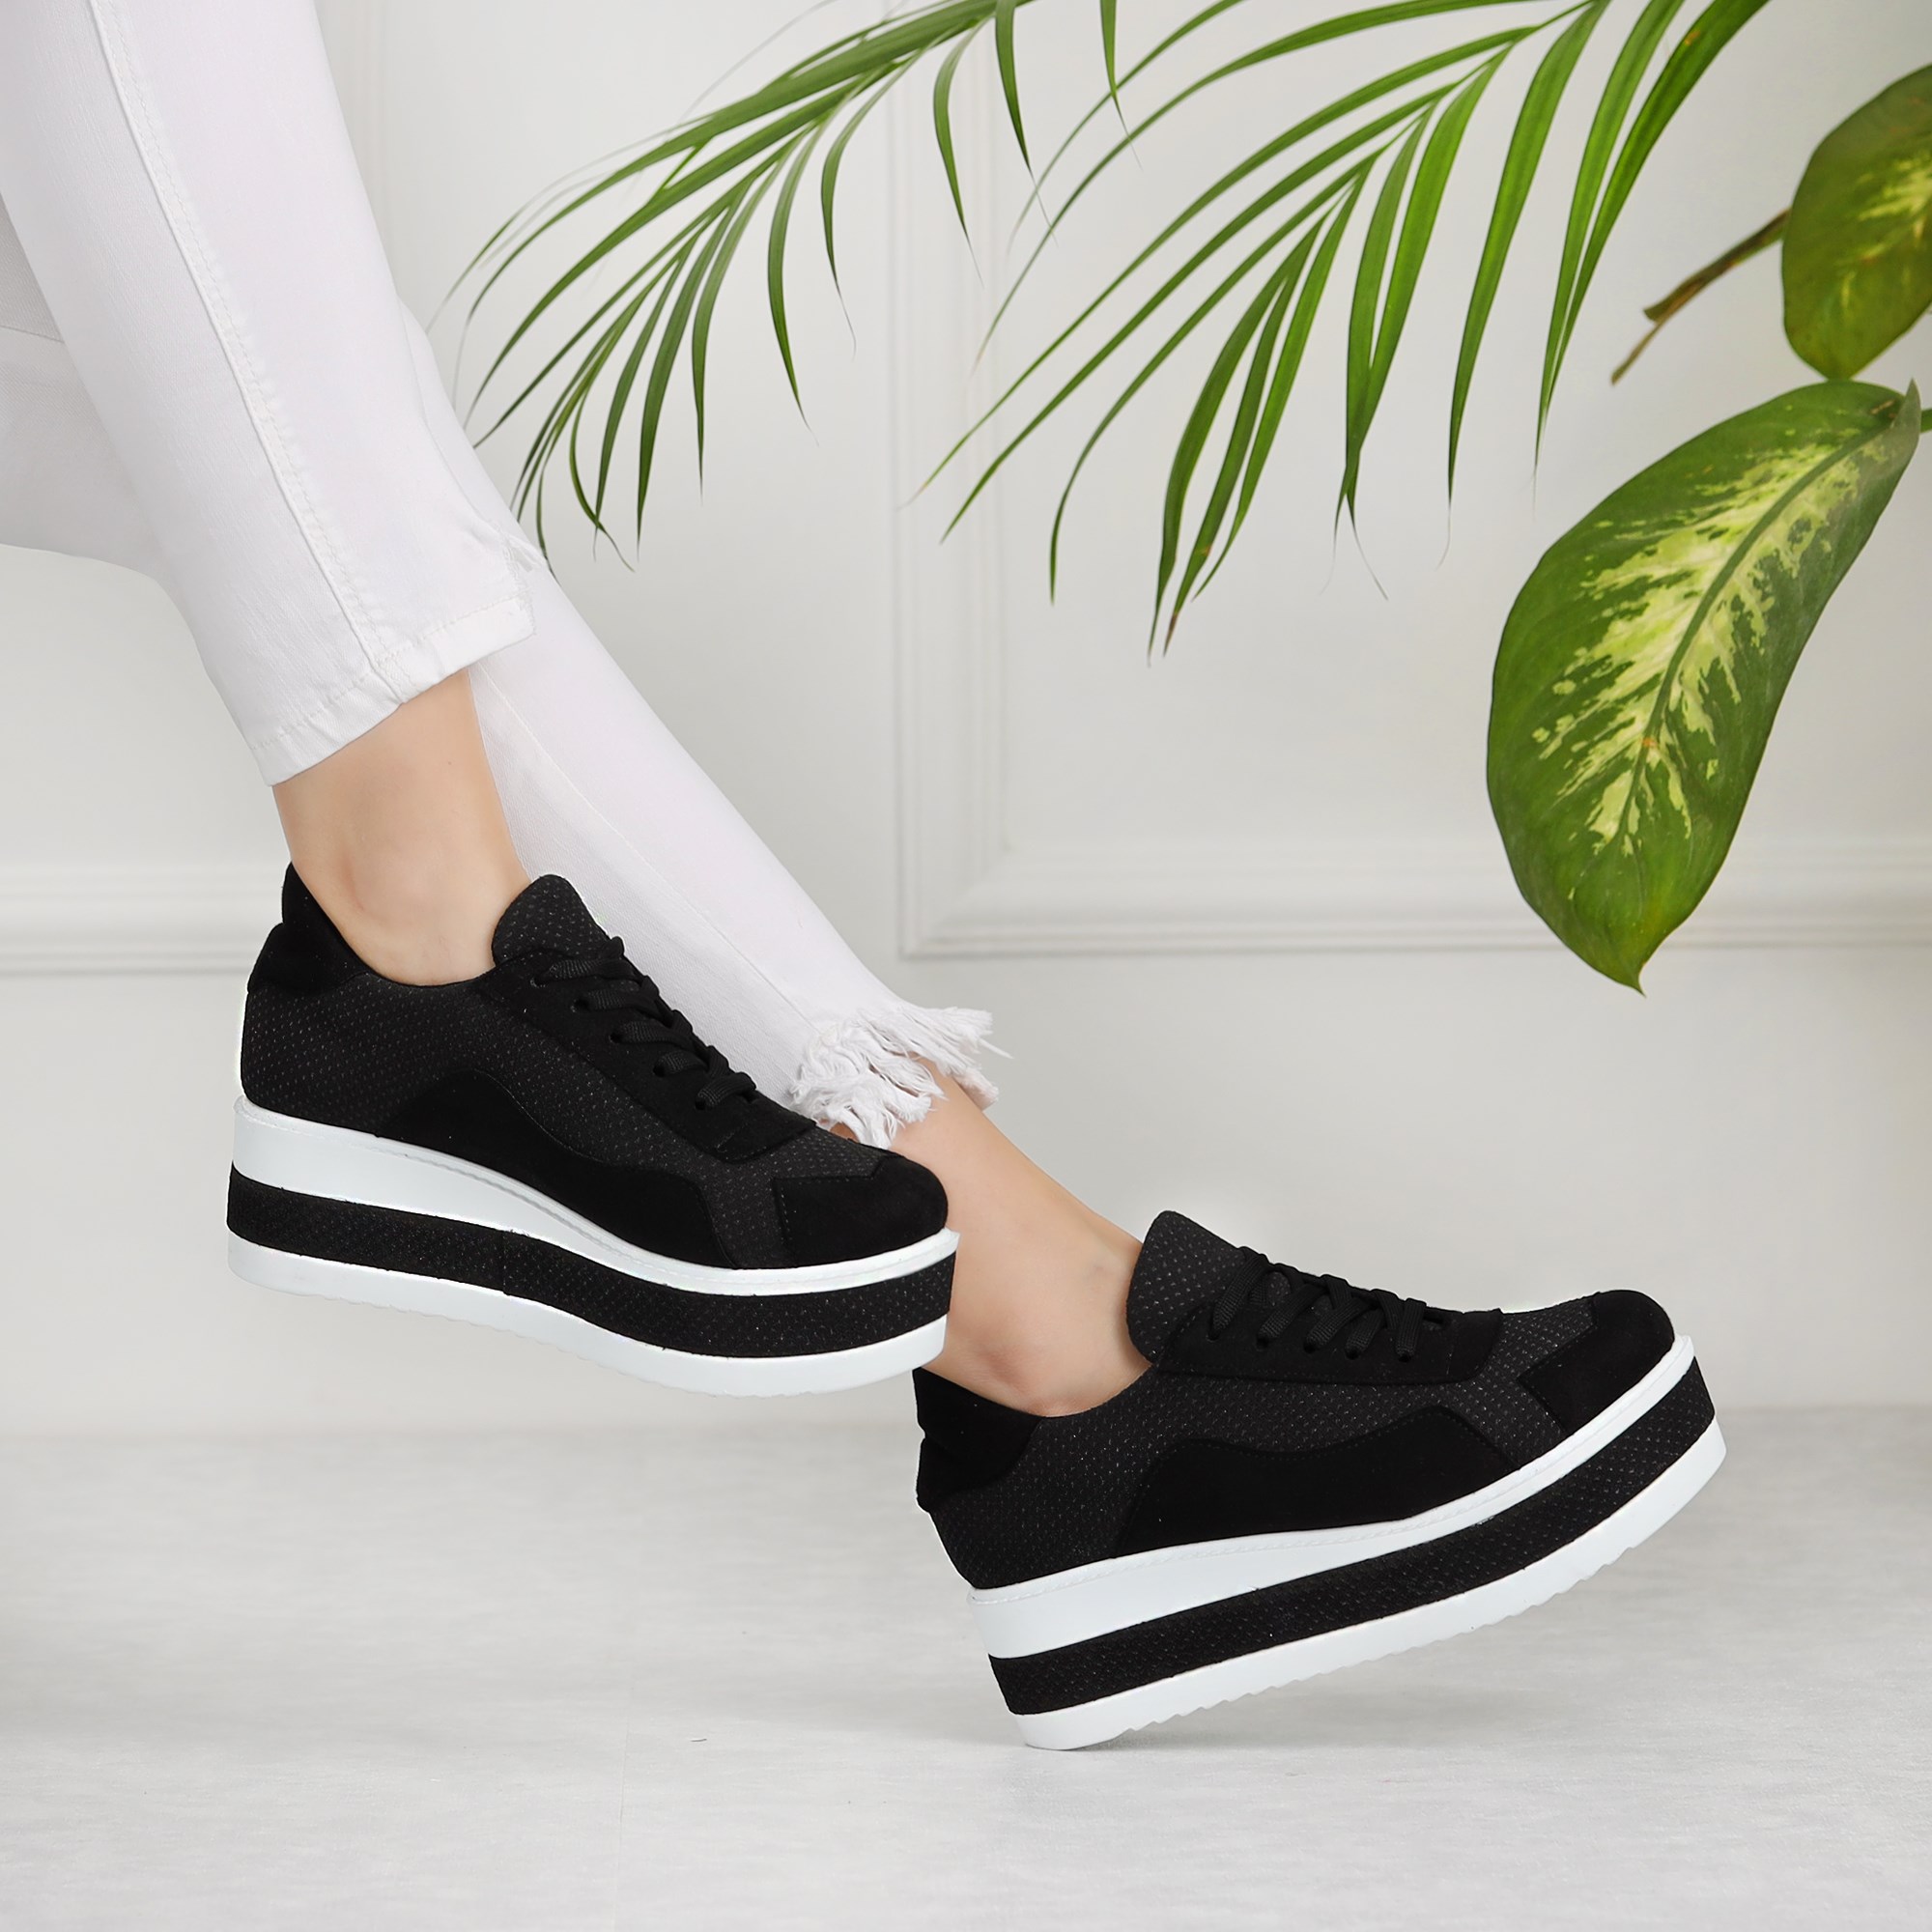 Santis Siyah Yüksek Kalın Tabanlı Kadın Spor Ayakkabı